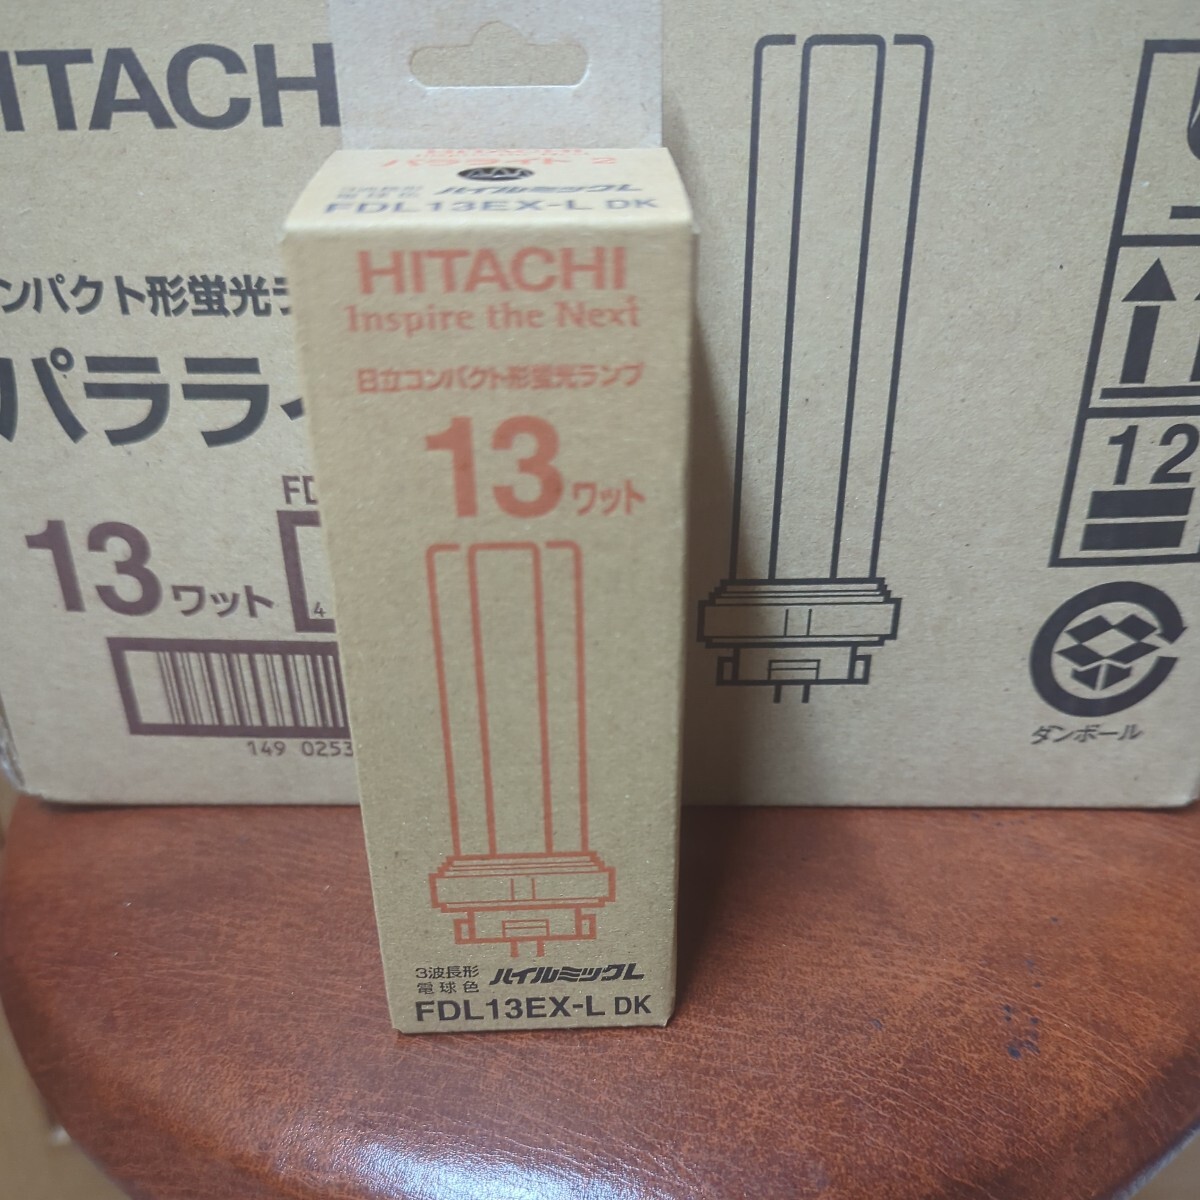  Hitachi pala light 2 FDL13EX-L lamp color is ilmi kL 13W unused 10 piece set hitachi